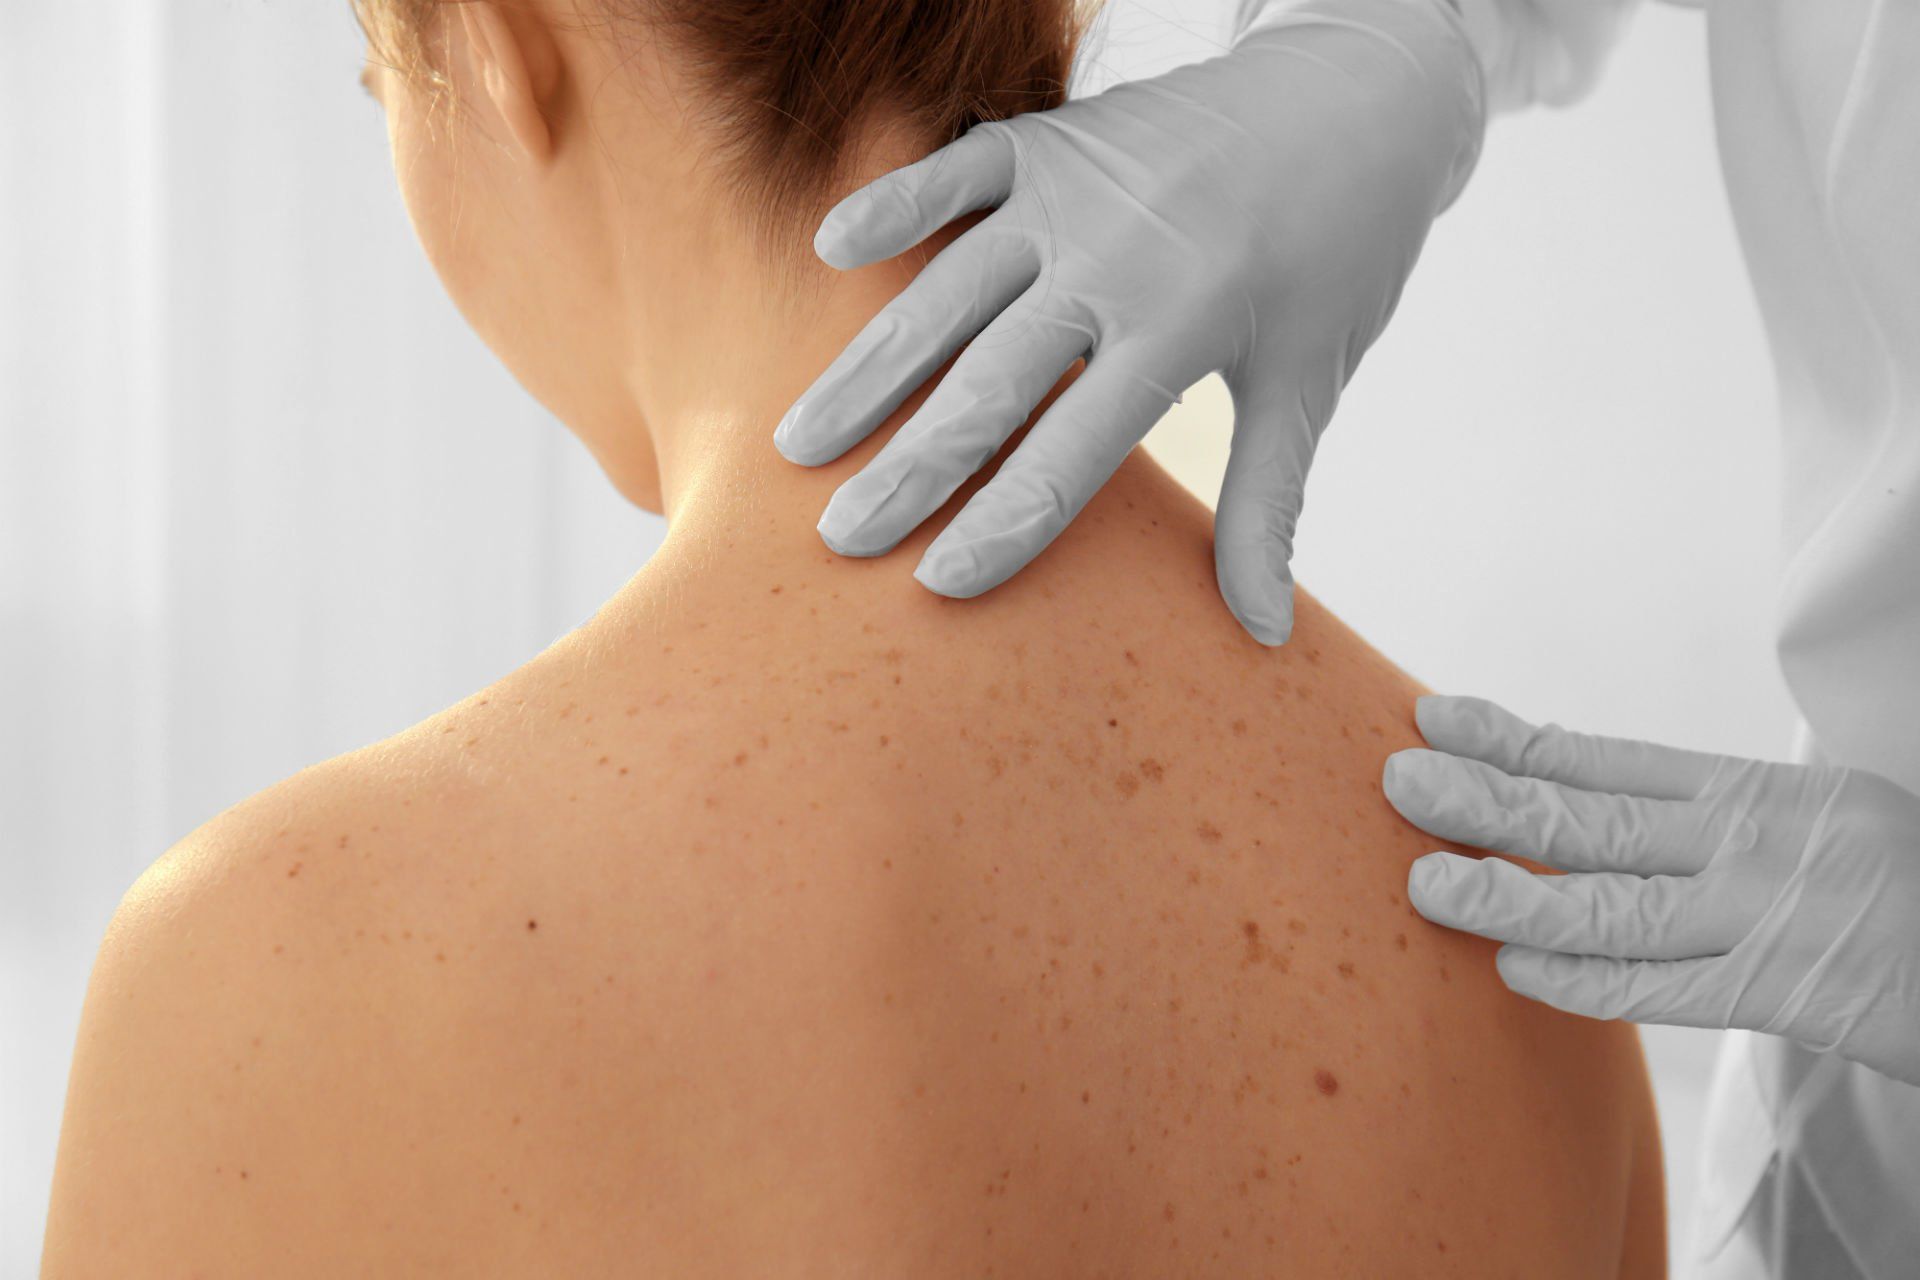 Dermatologo esamina nei sulla schiena di una donna